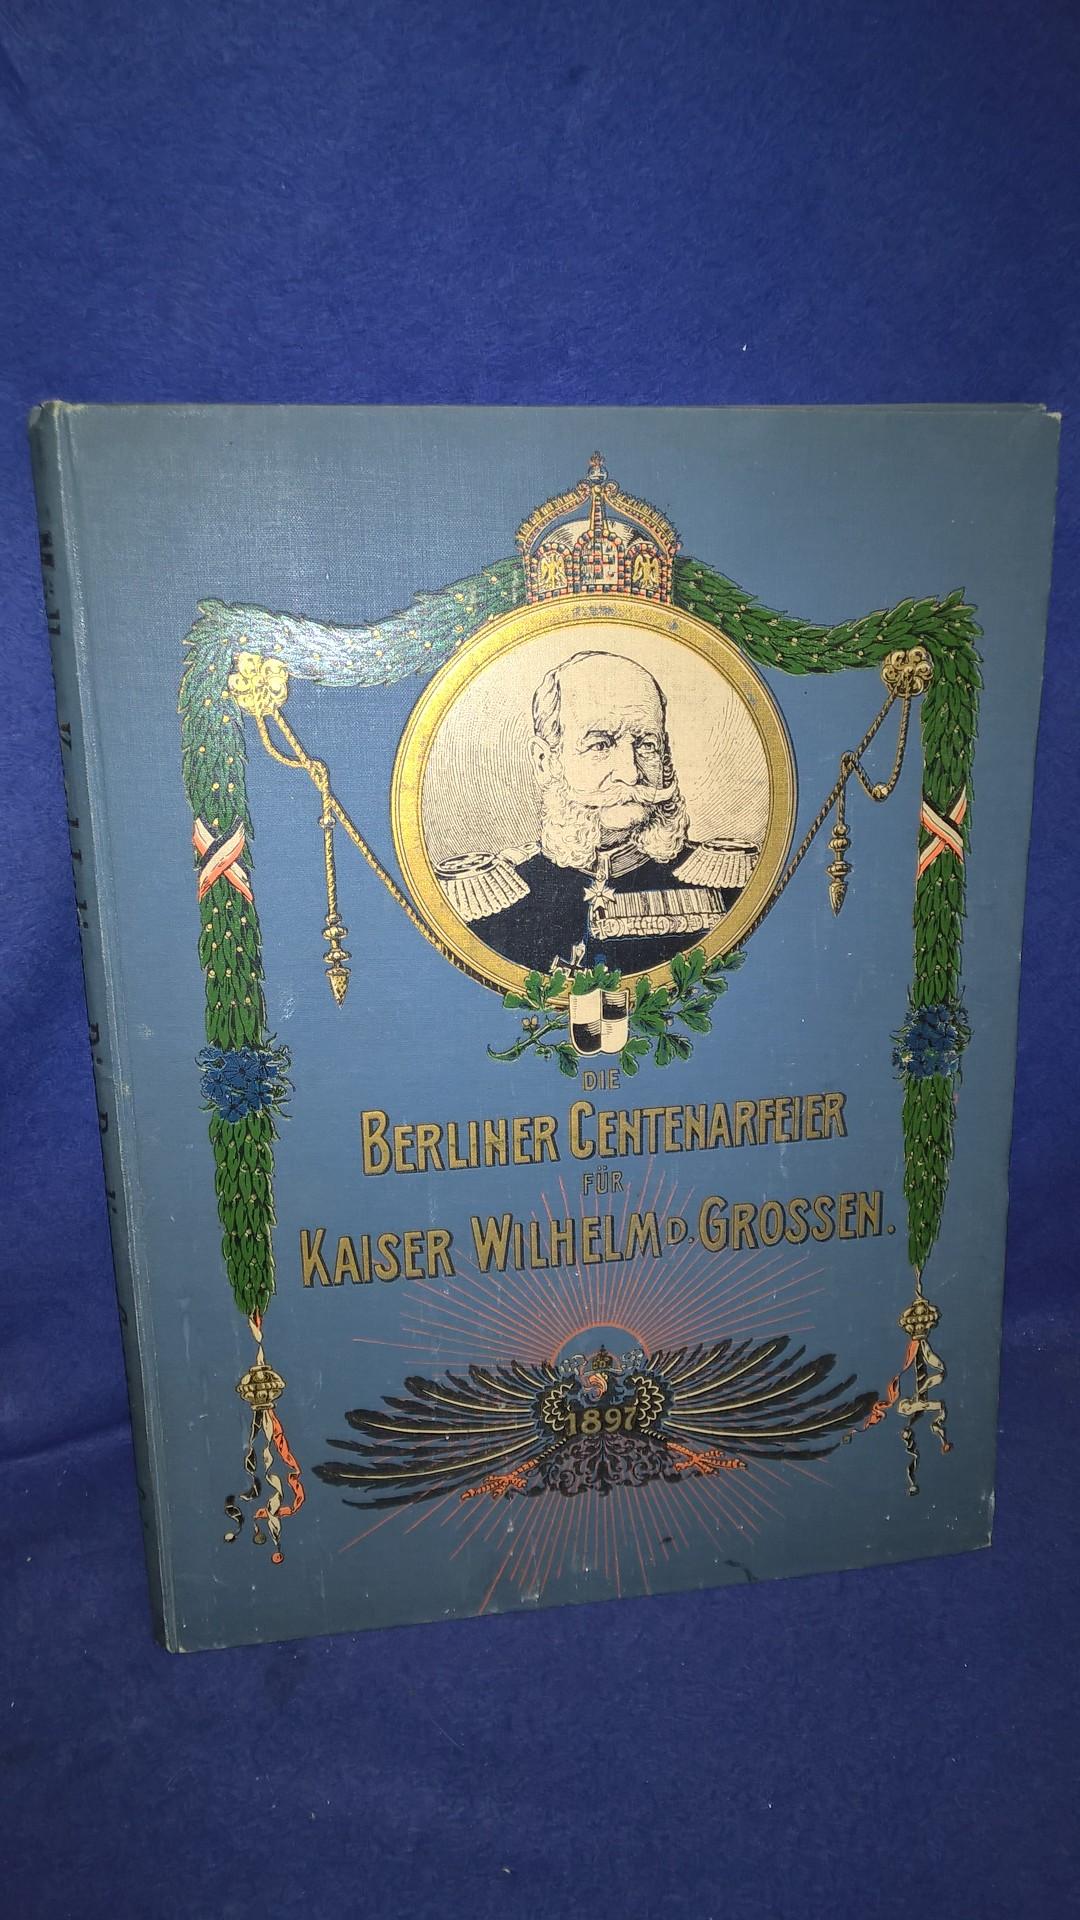 Die Berliner Centenarfeier (Centenar-Feier) für Kaiser Wilhelm den Großen vom 21. bis 23. März 1897. - Denkschrift -.